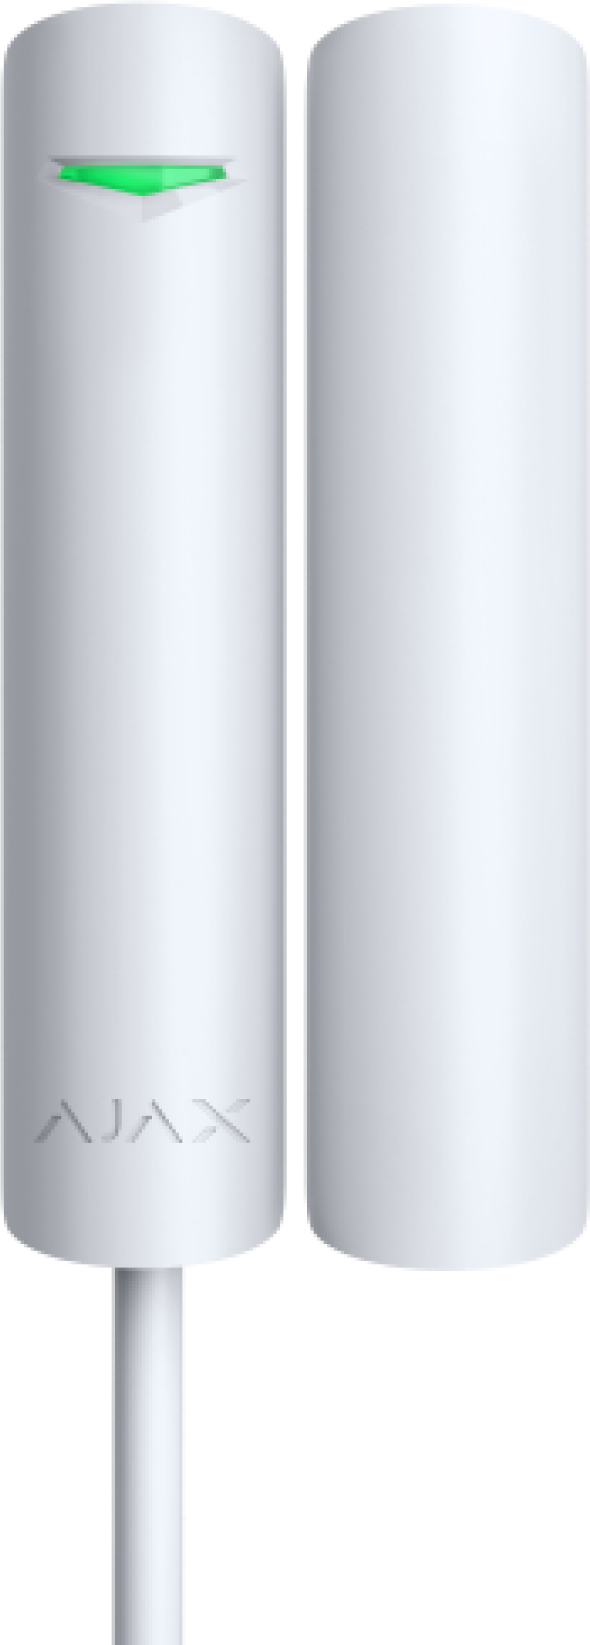 AJAX DoorProtect Plus white - Fibra